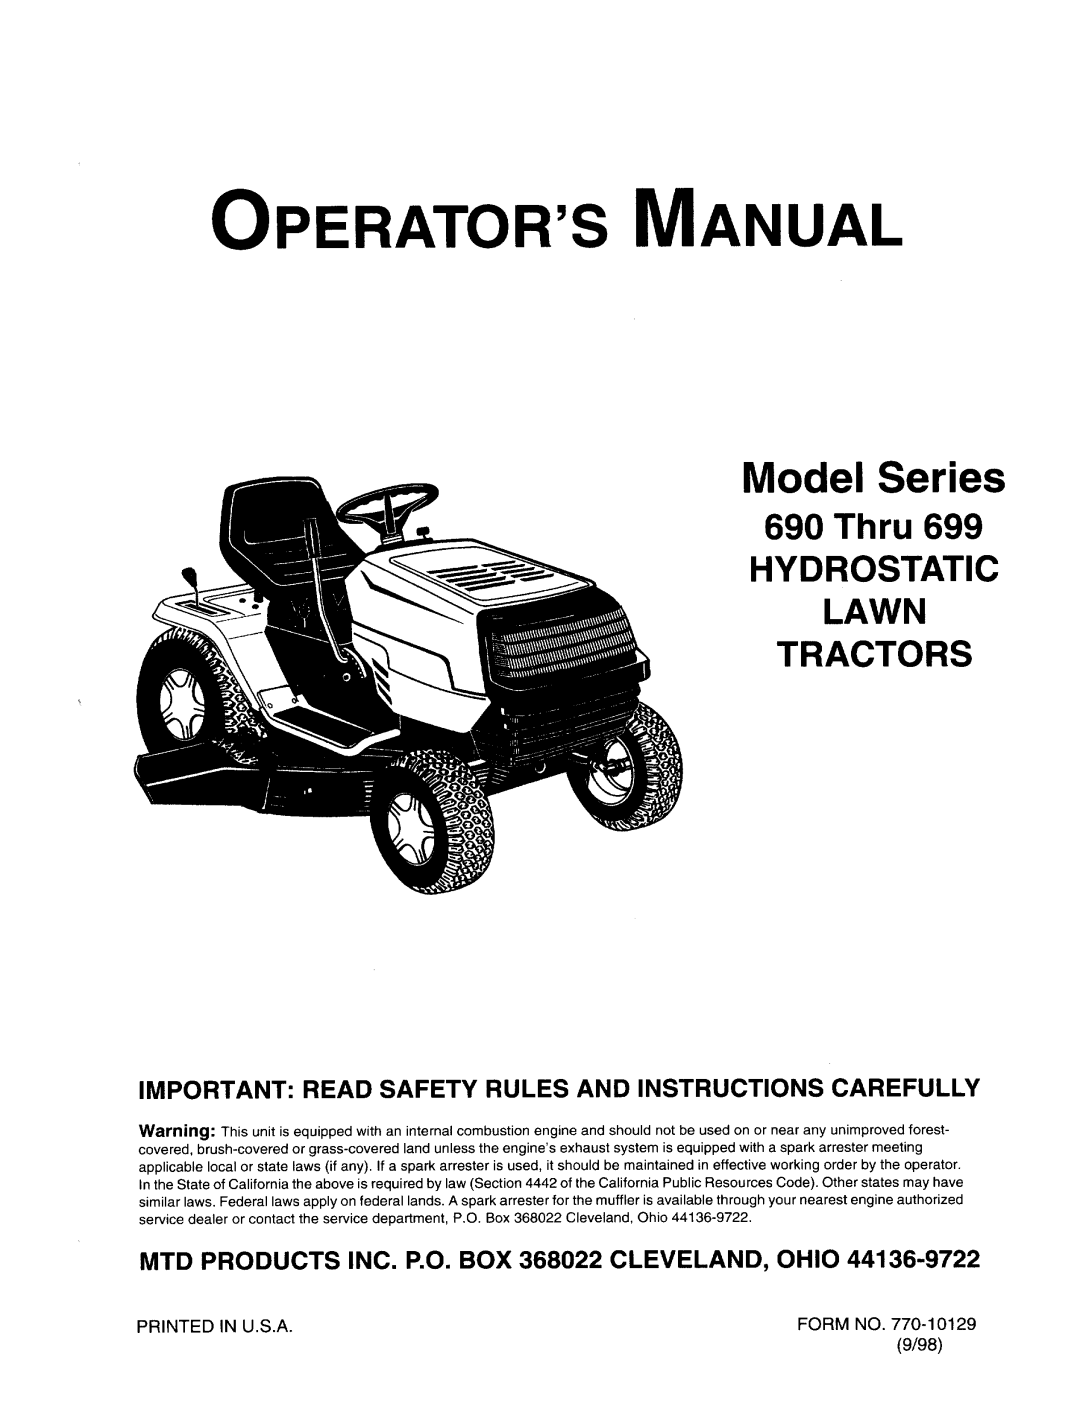 MTD 690 thru 699 manual 